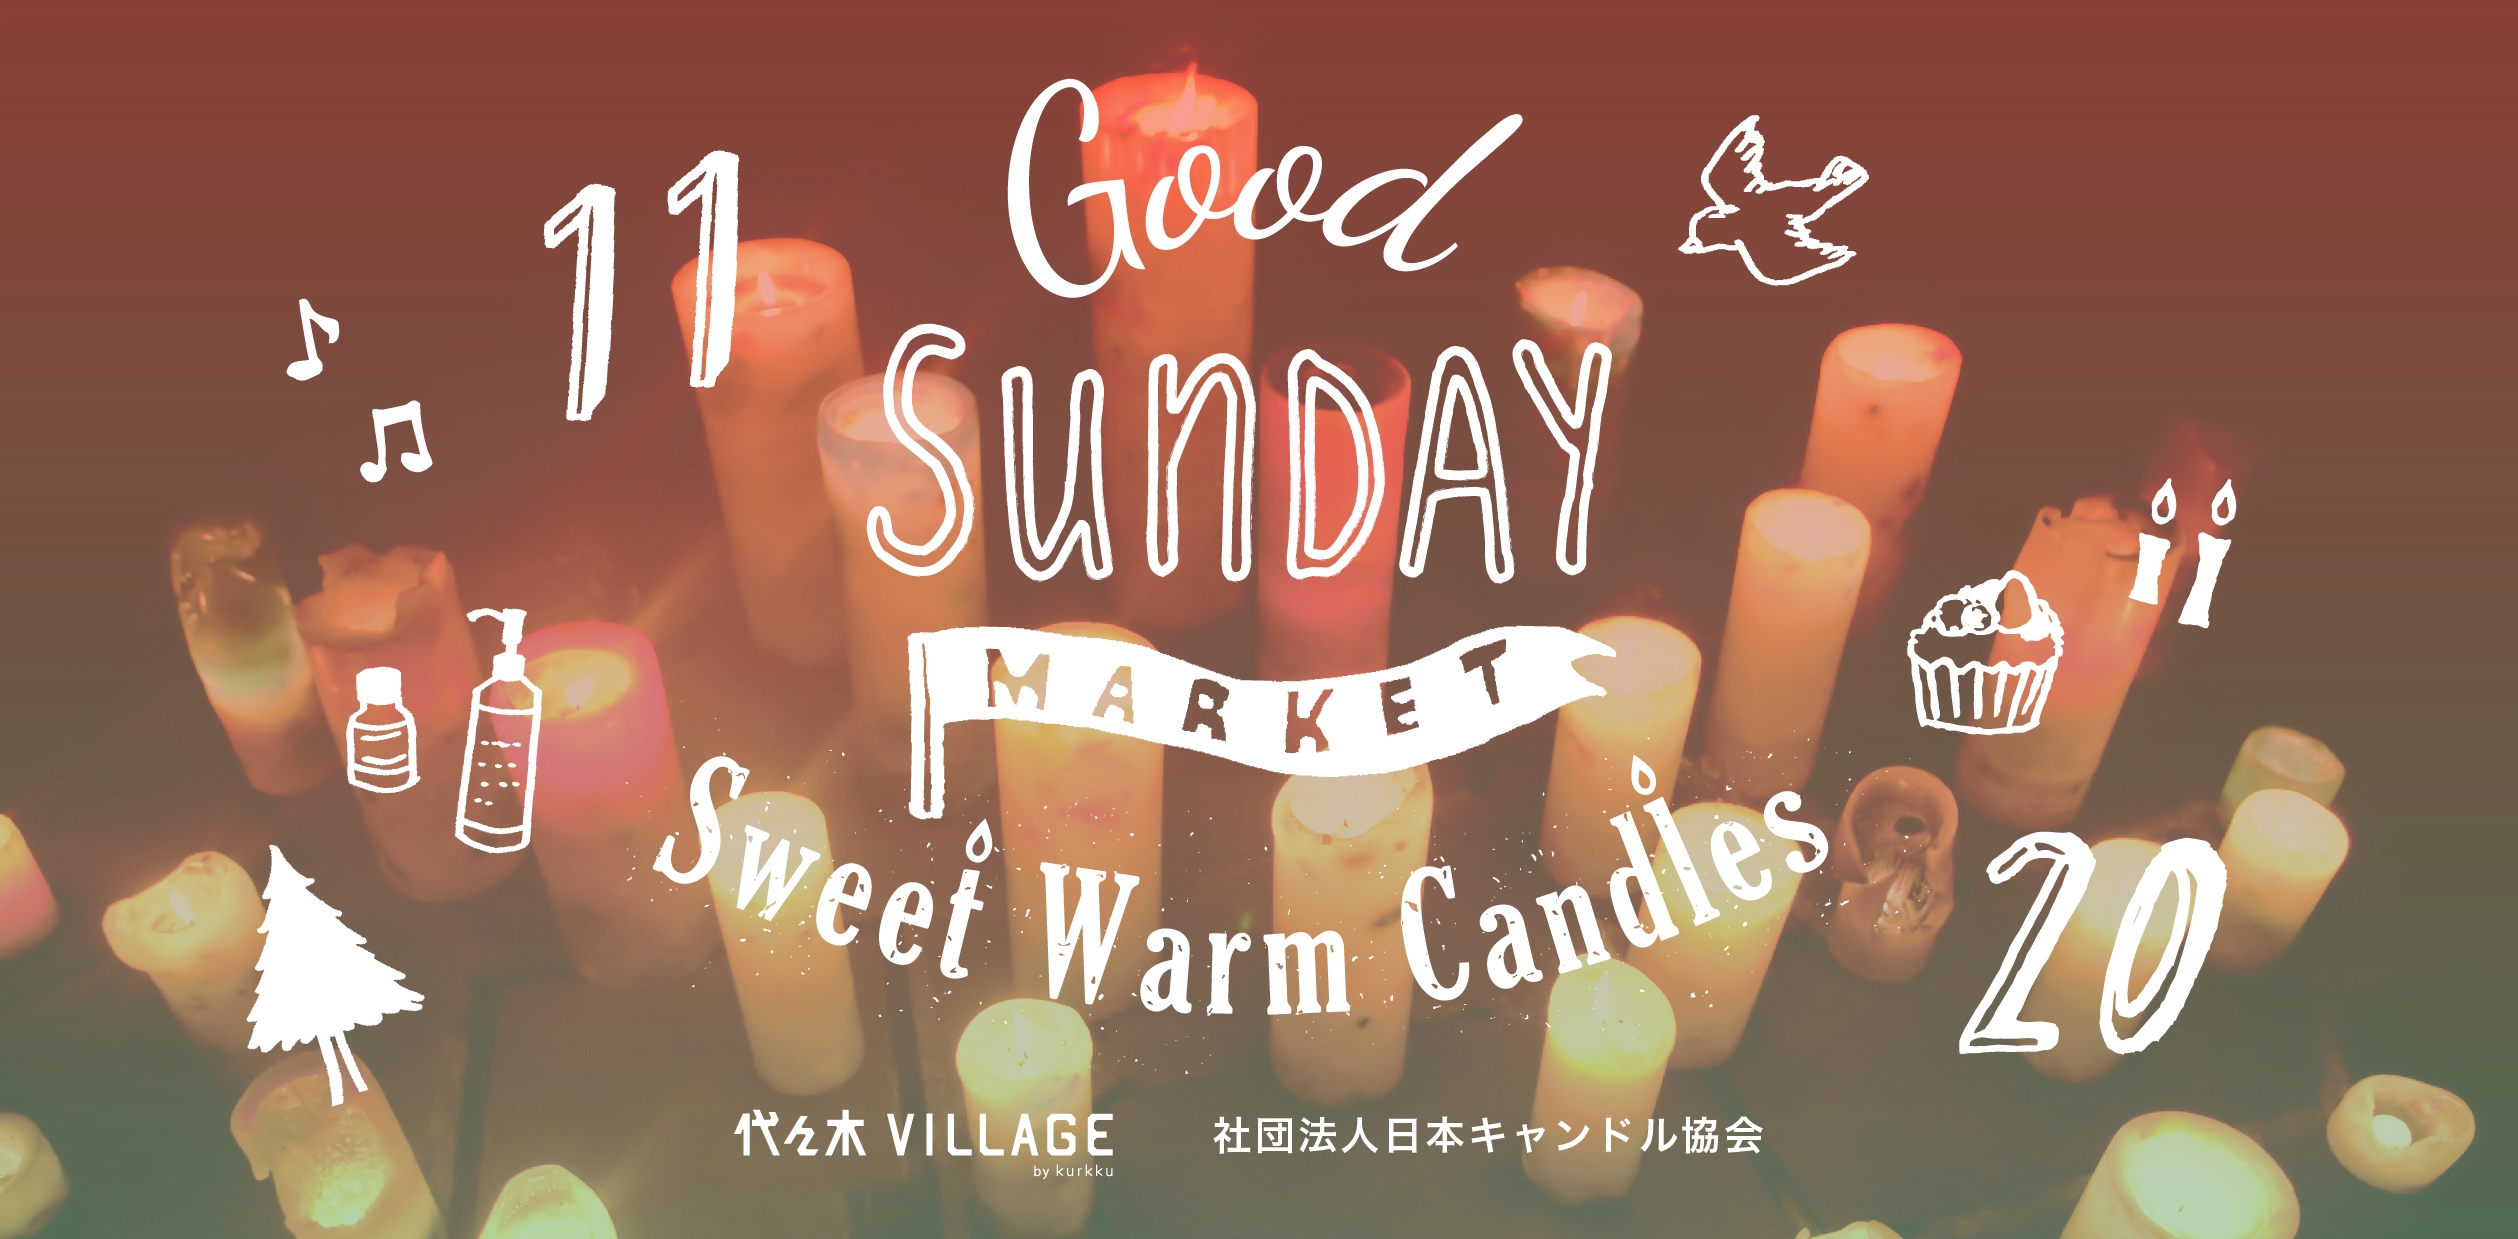 なるべくカラダに良いものを 無理なく 楽しく 2016年11月20日 Good Sunday Market Sweet Warm Candles を開催 株式会社kurkkuのプレスリリース